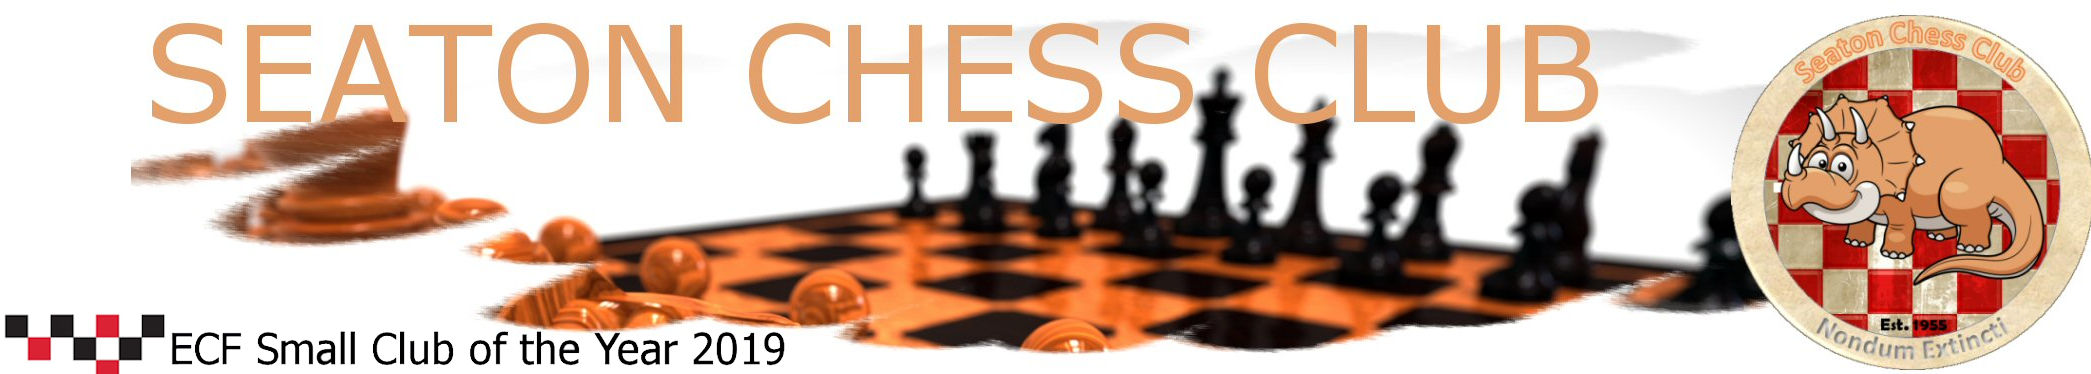 Seaton Chess Club Banner